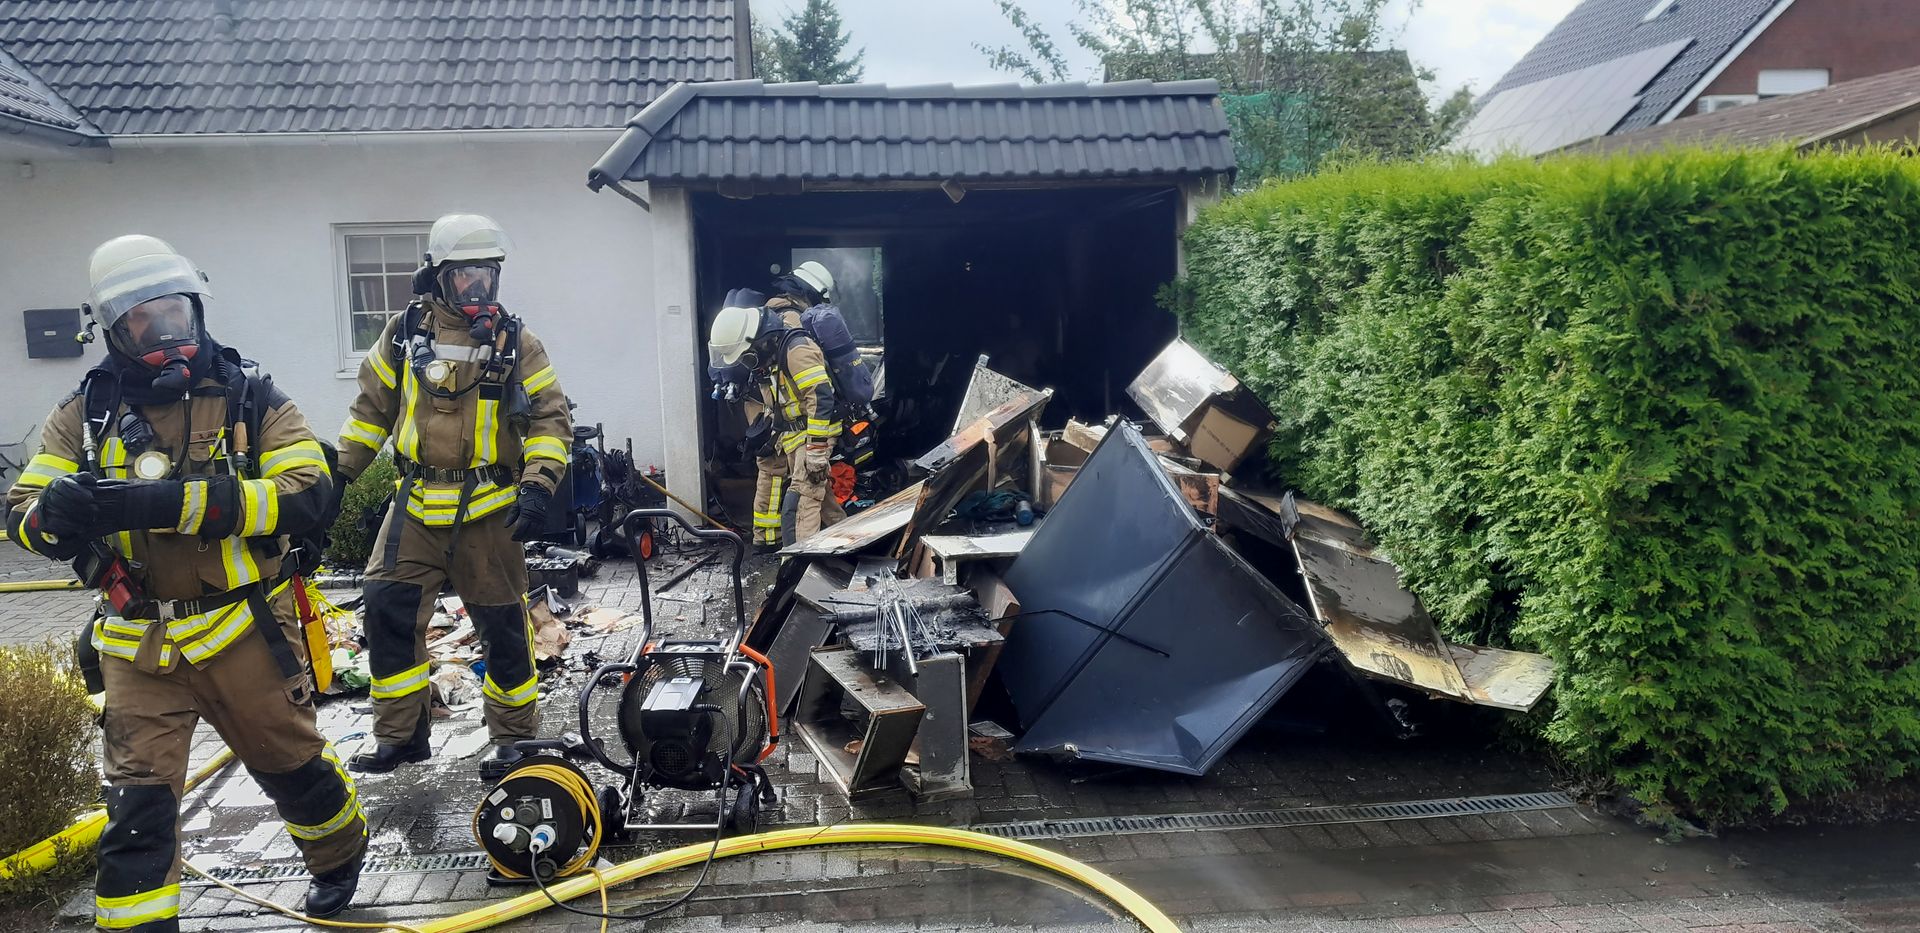 Garagenbrand in Bremerhaven - Lehe